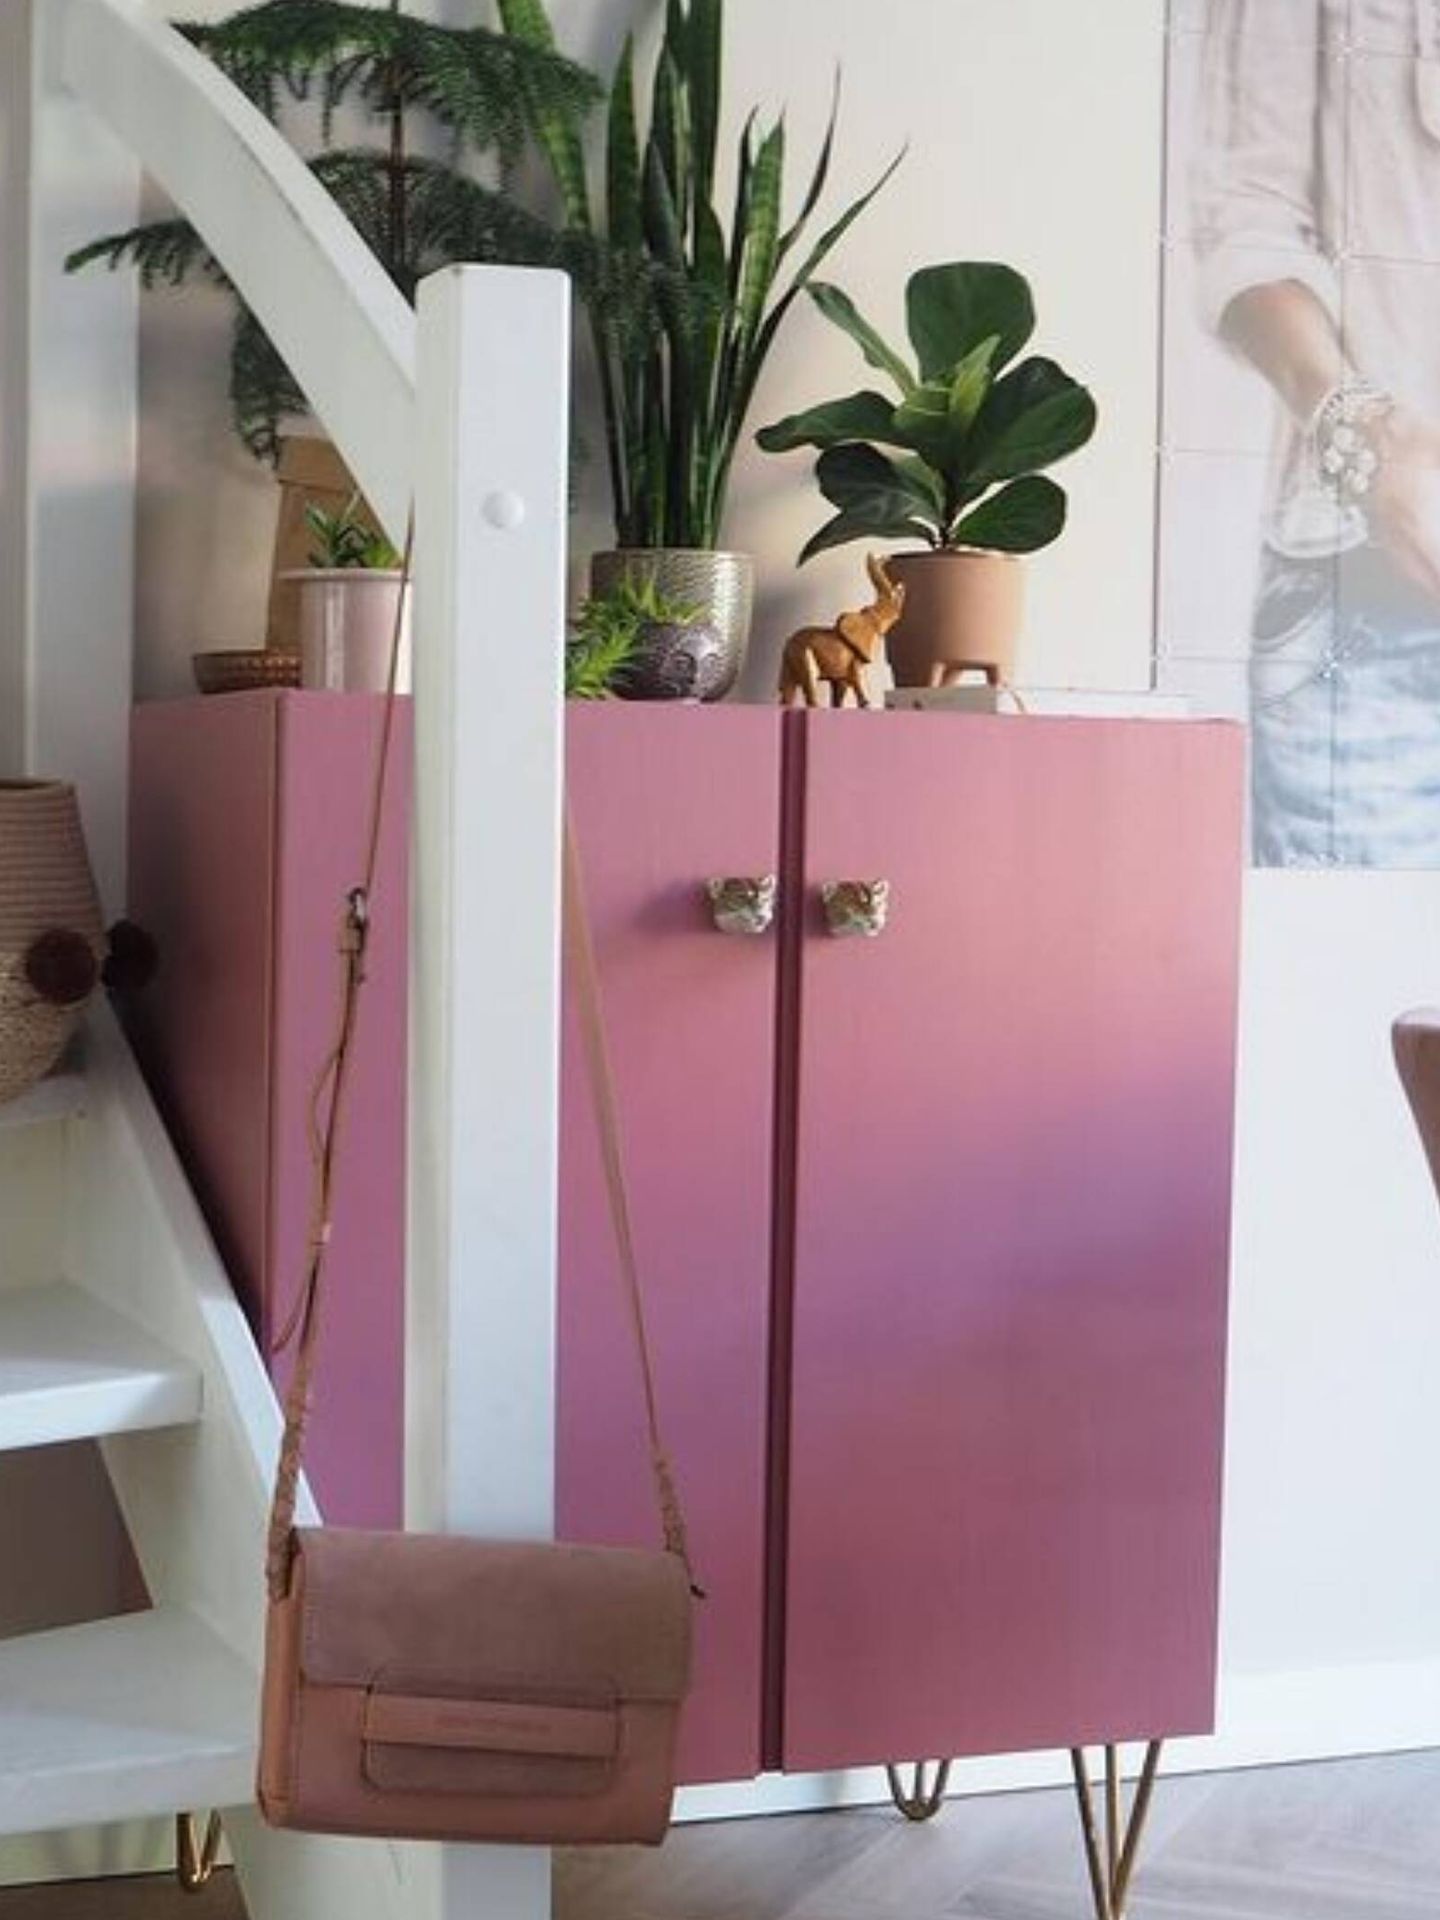 Descubre los trucos para renovar los muebles, como la estantería Ivar de Ikea. (Instagram/@4katypomojemu)